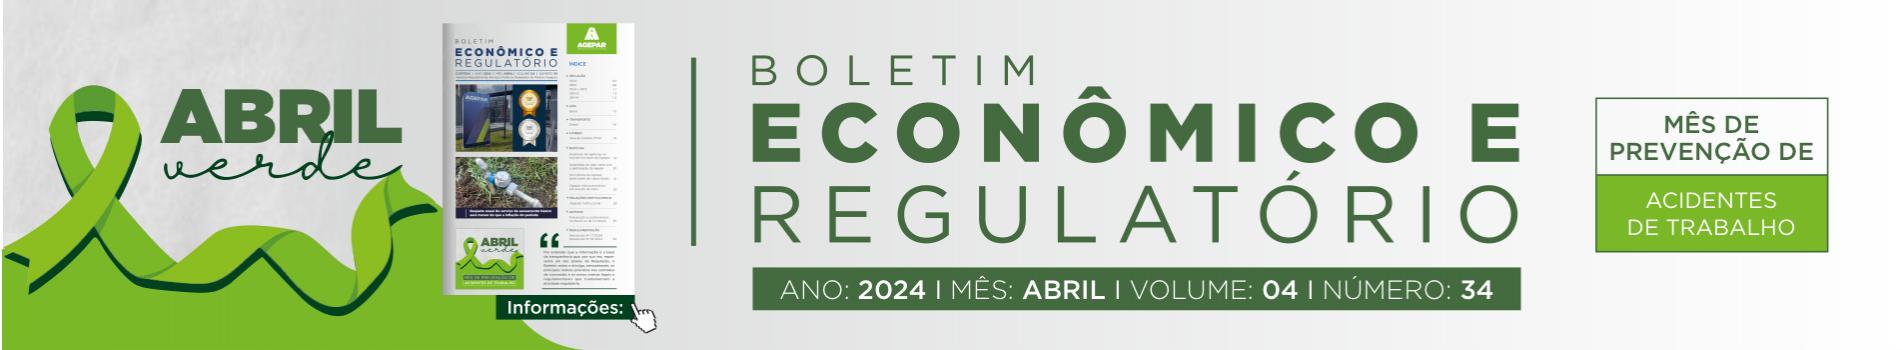 Boletim Econômico e Regulatório - Número 34 - Abril 2024